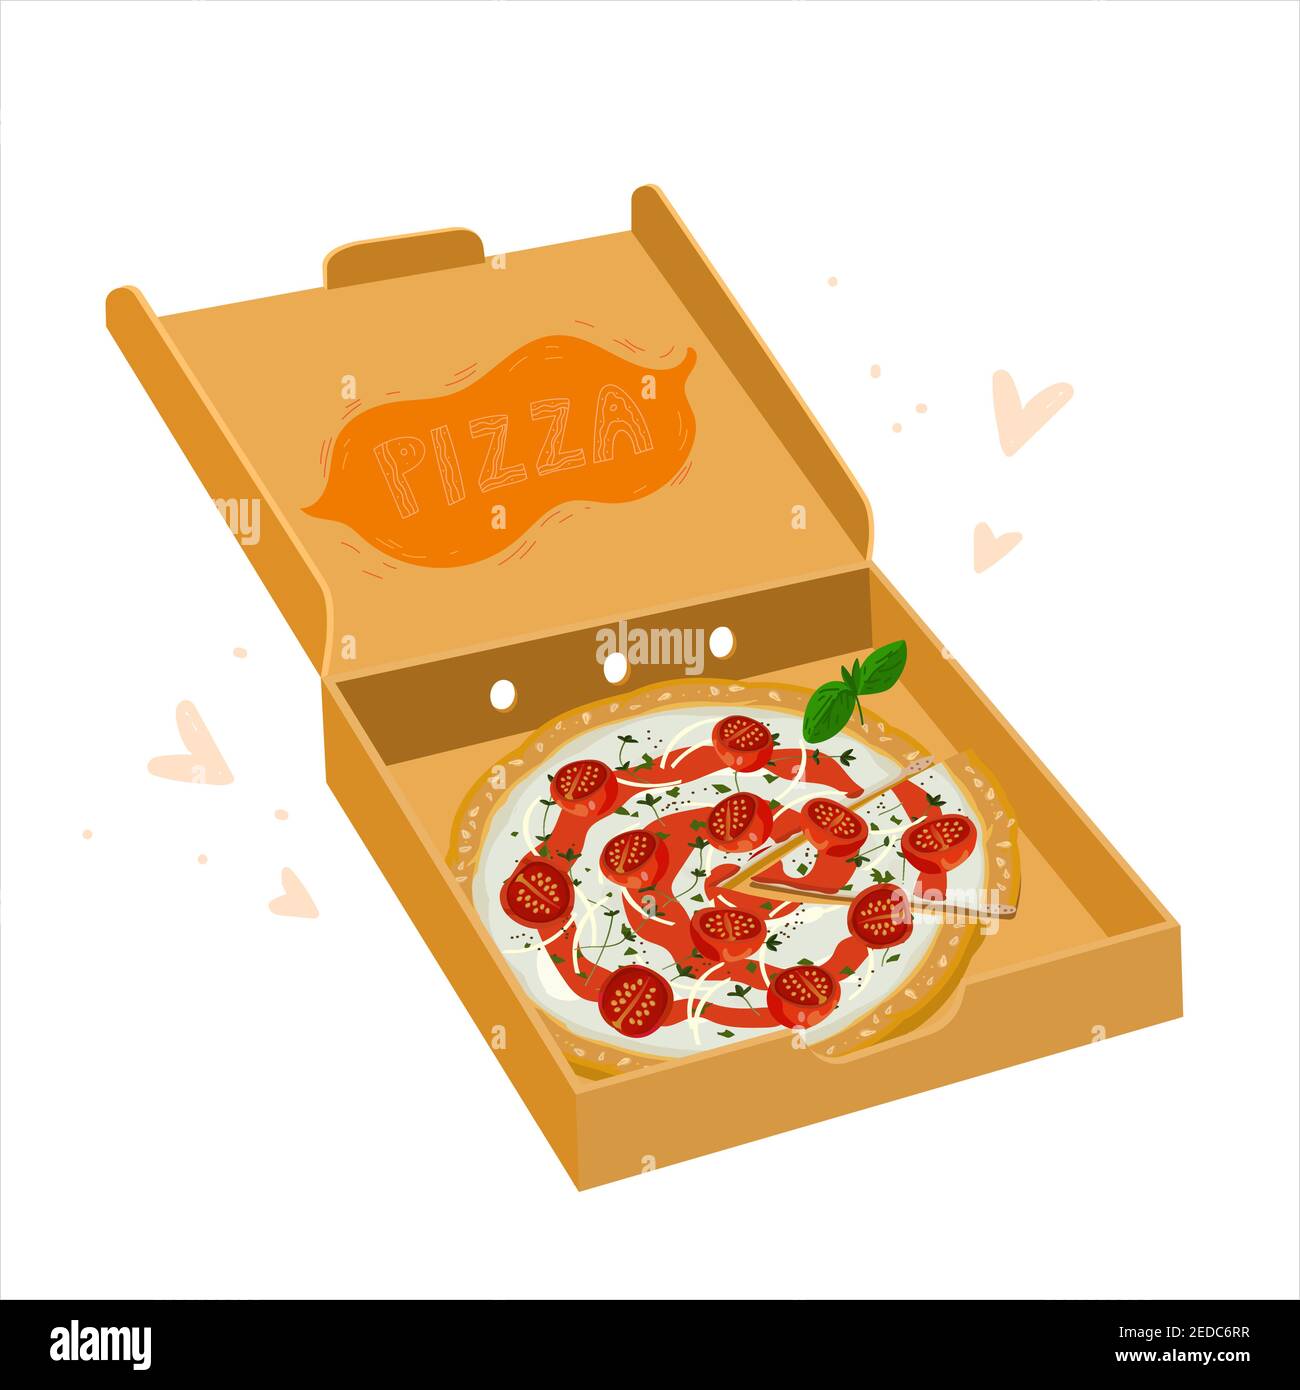 Pizza margherita en caja abierta de cartón. Pizza clásica italiana con tomate cortada. margarita vegetariana, buena para la entrega de comida promocional Ilustración del Vector